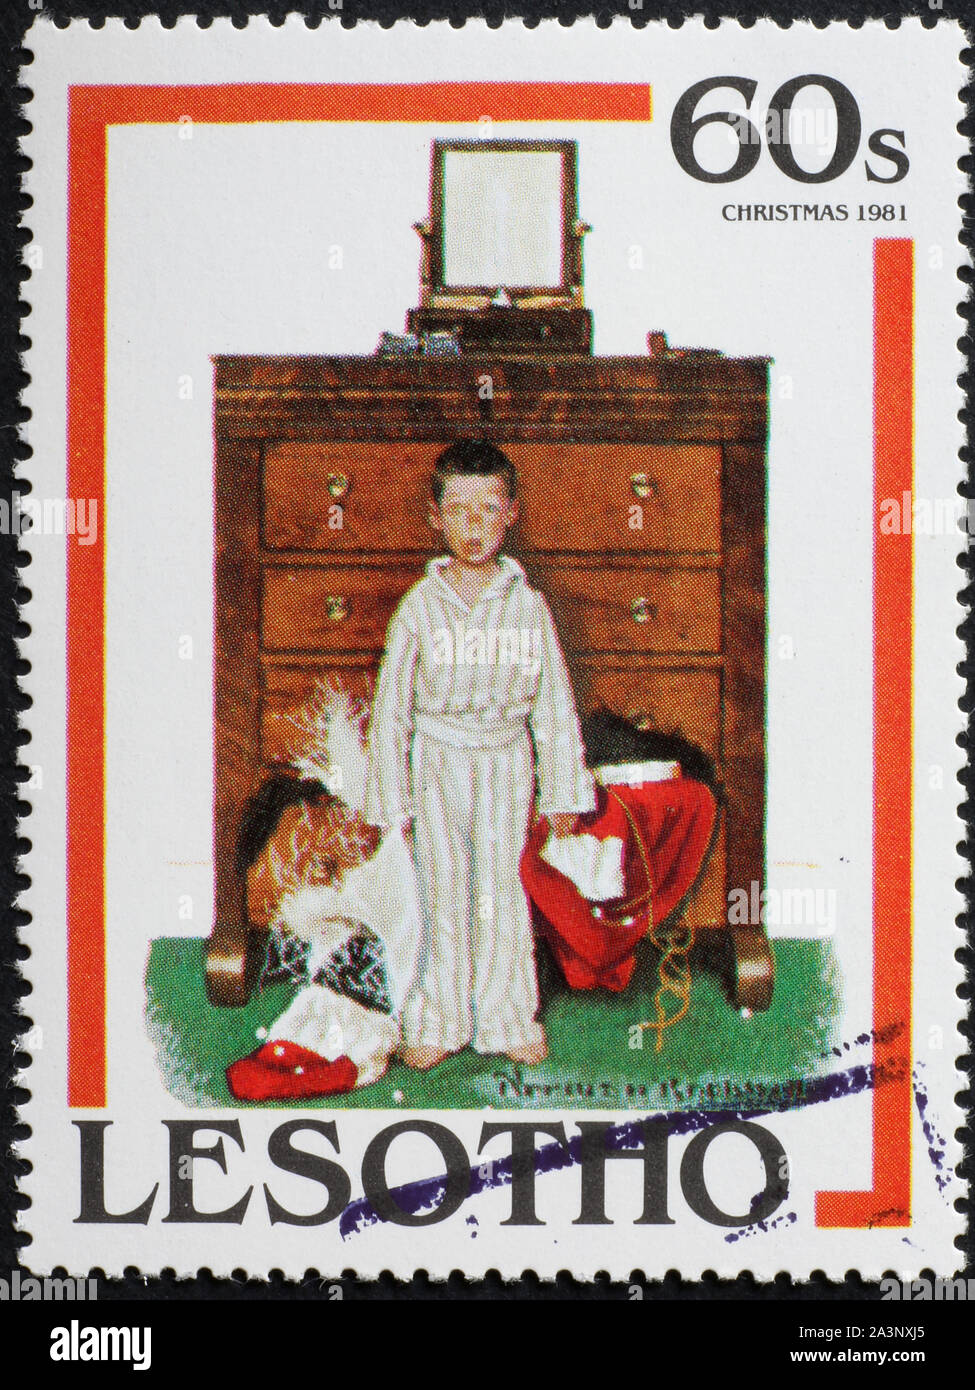 Illustration de Noël par Norman Rockweel sur timbre-poste Banque D'Images